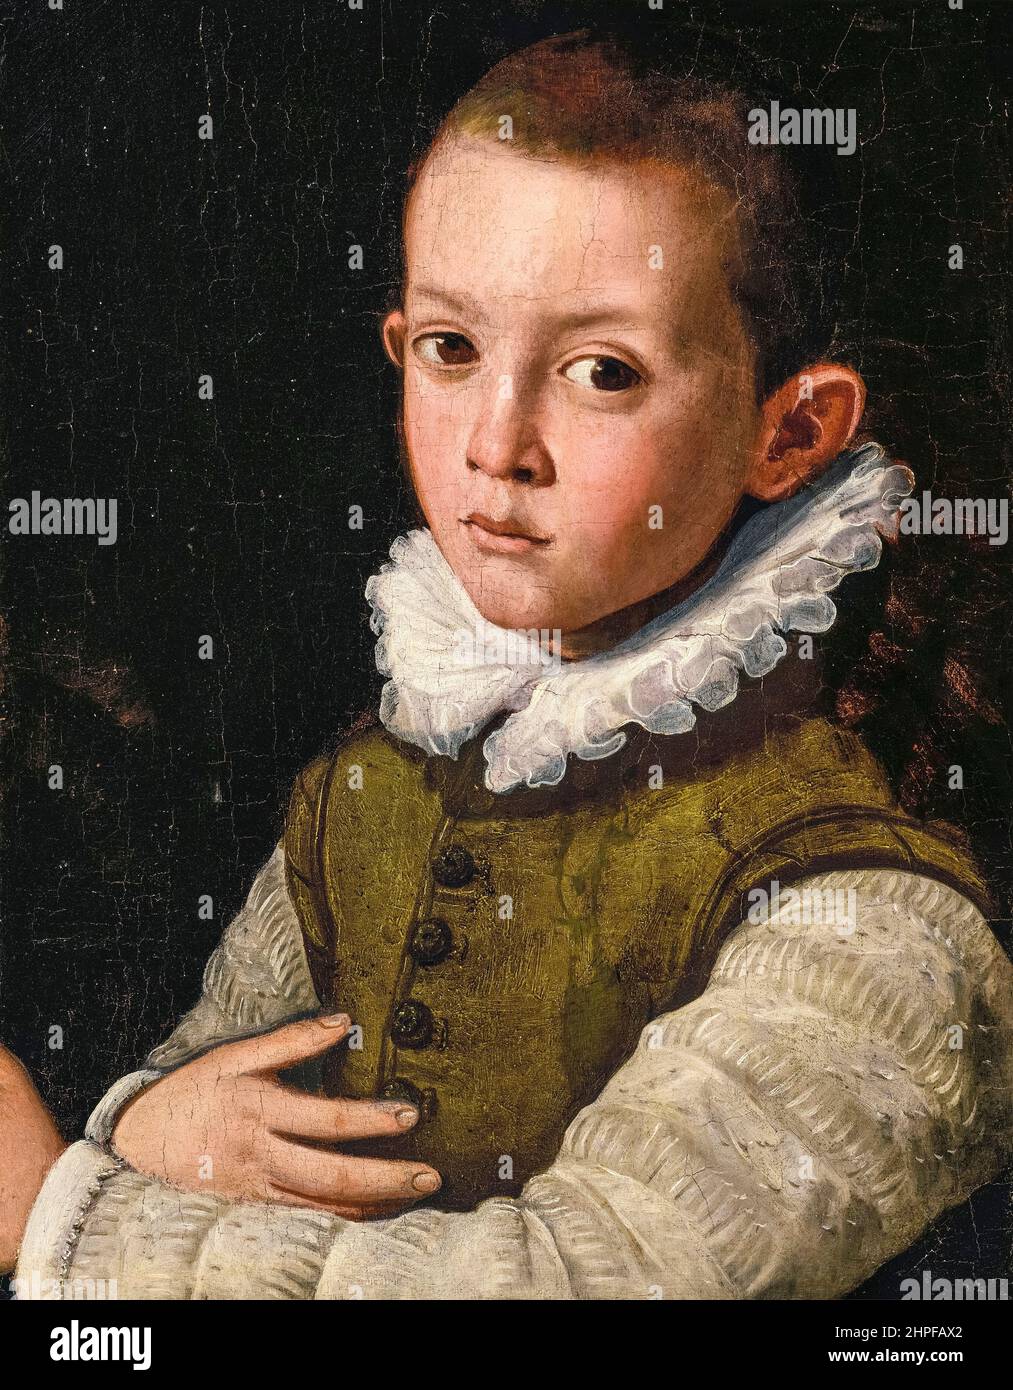 Santi di Tito, Portrait d'un jeune garçon mi-longueur dans une ruff, peinture, huile sur panneau, avant 1602 Banque D'Images